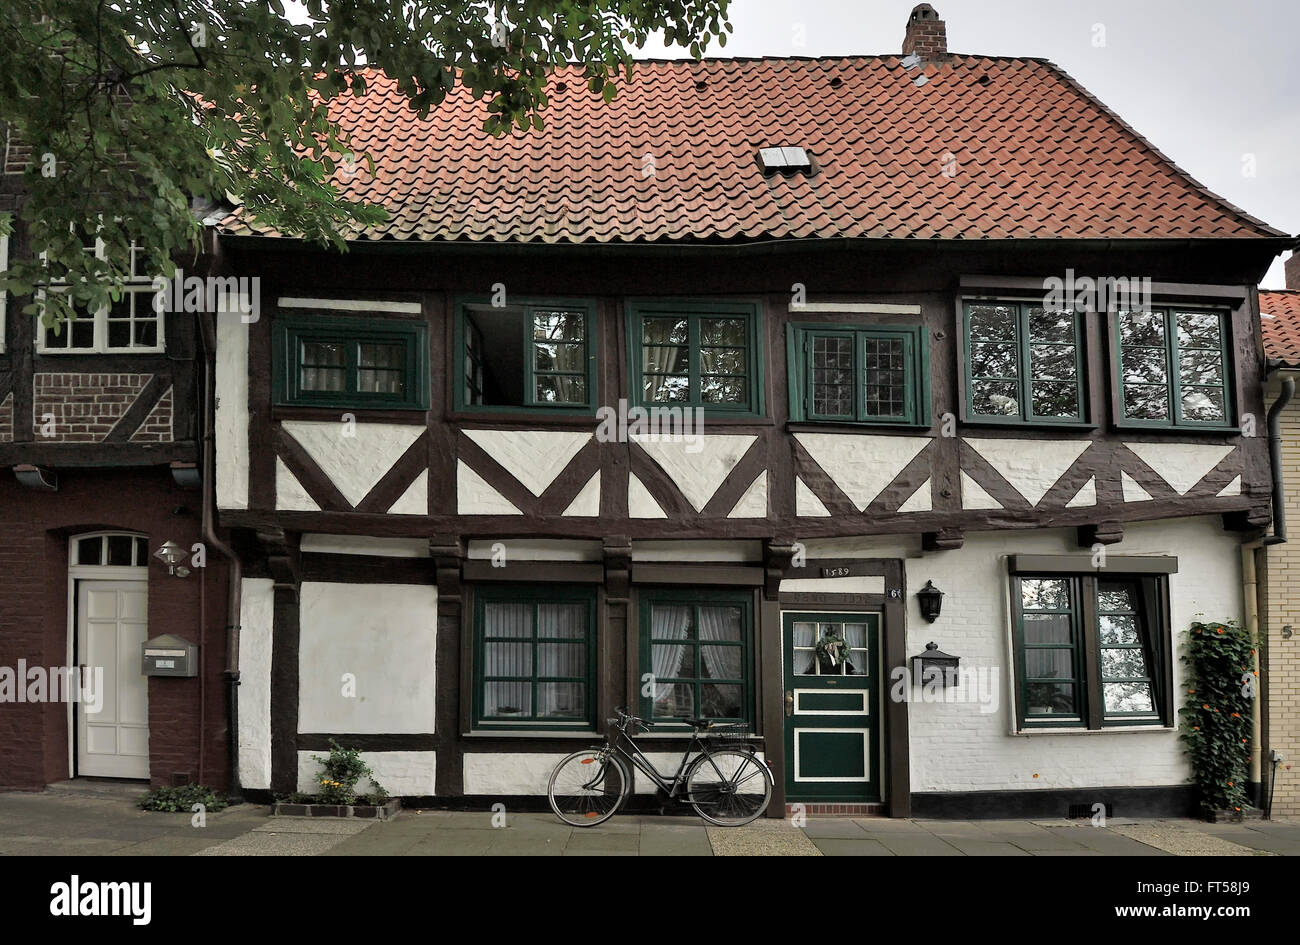 old half-timbered house near Ratsmuhle, Luneburg, Germany Stock Photo